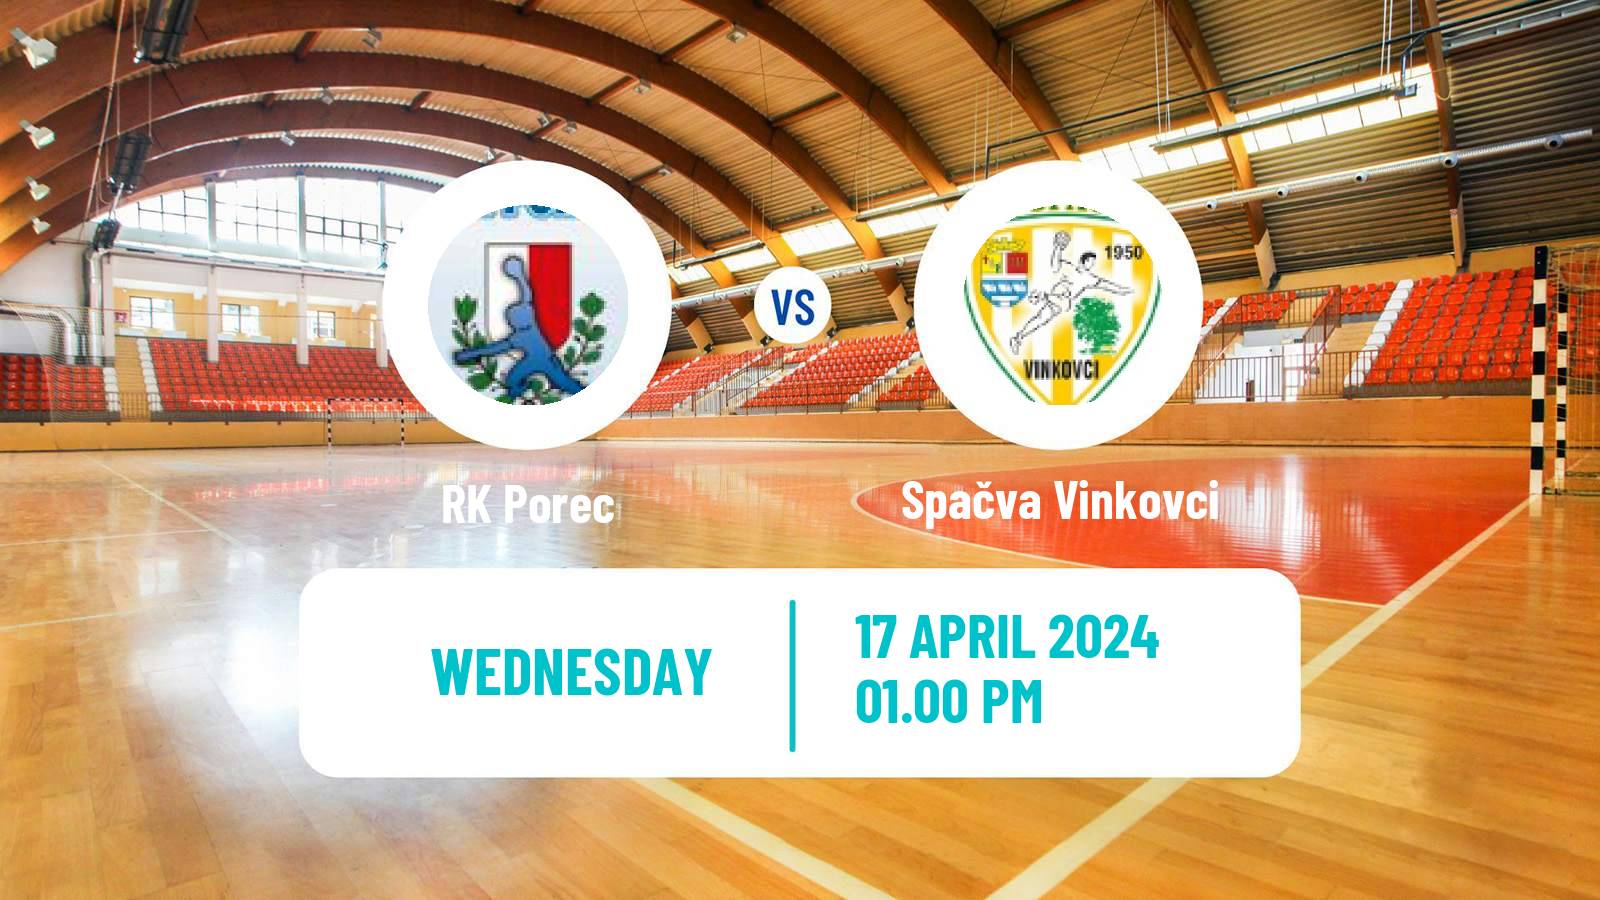 Handball Croatian Premijer Liga Handball Porec - Spačva Vinkovci